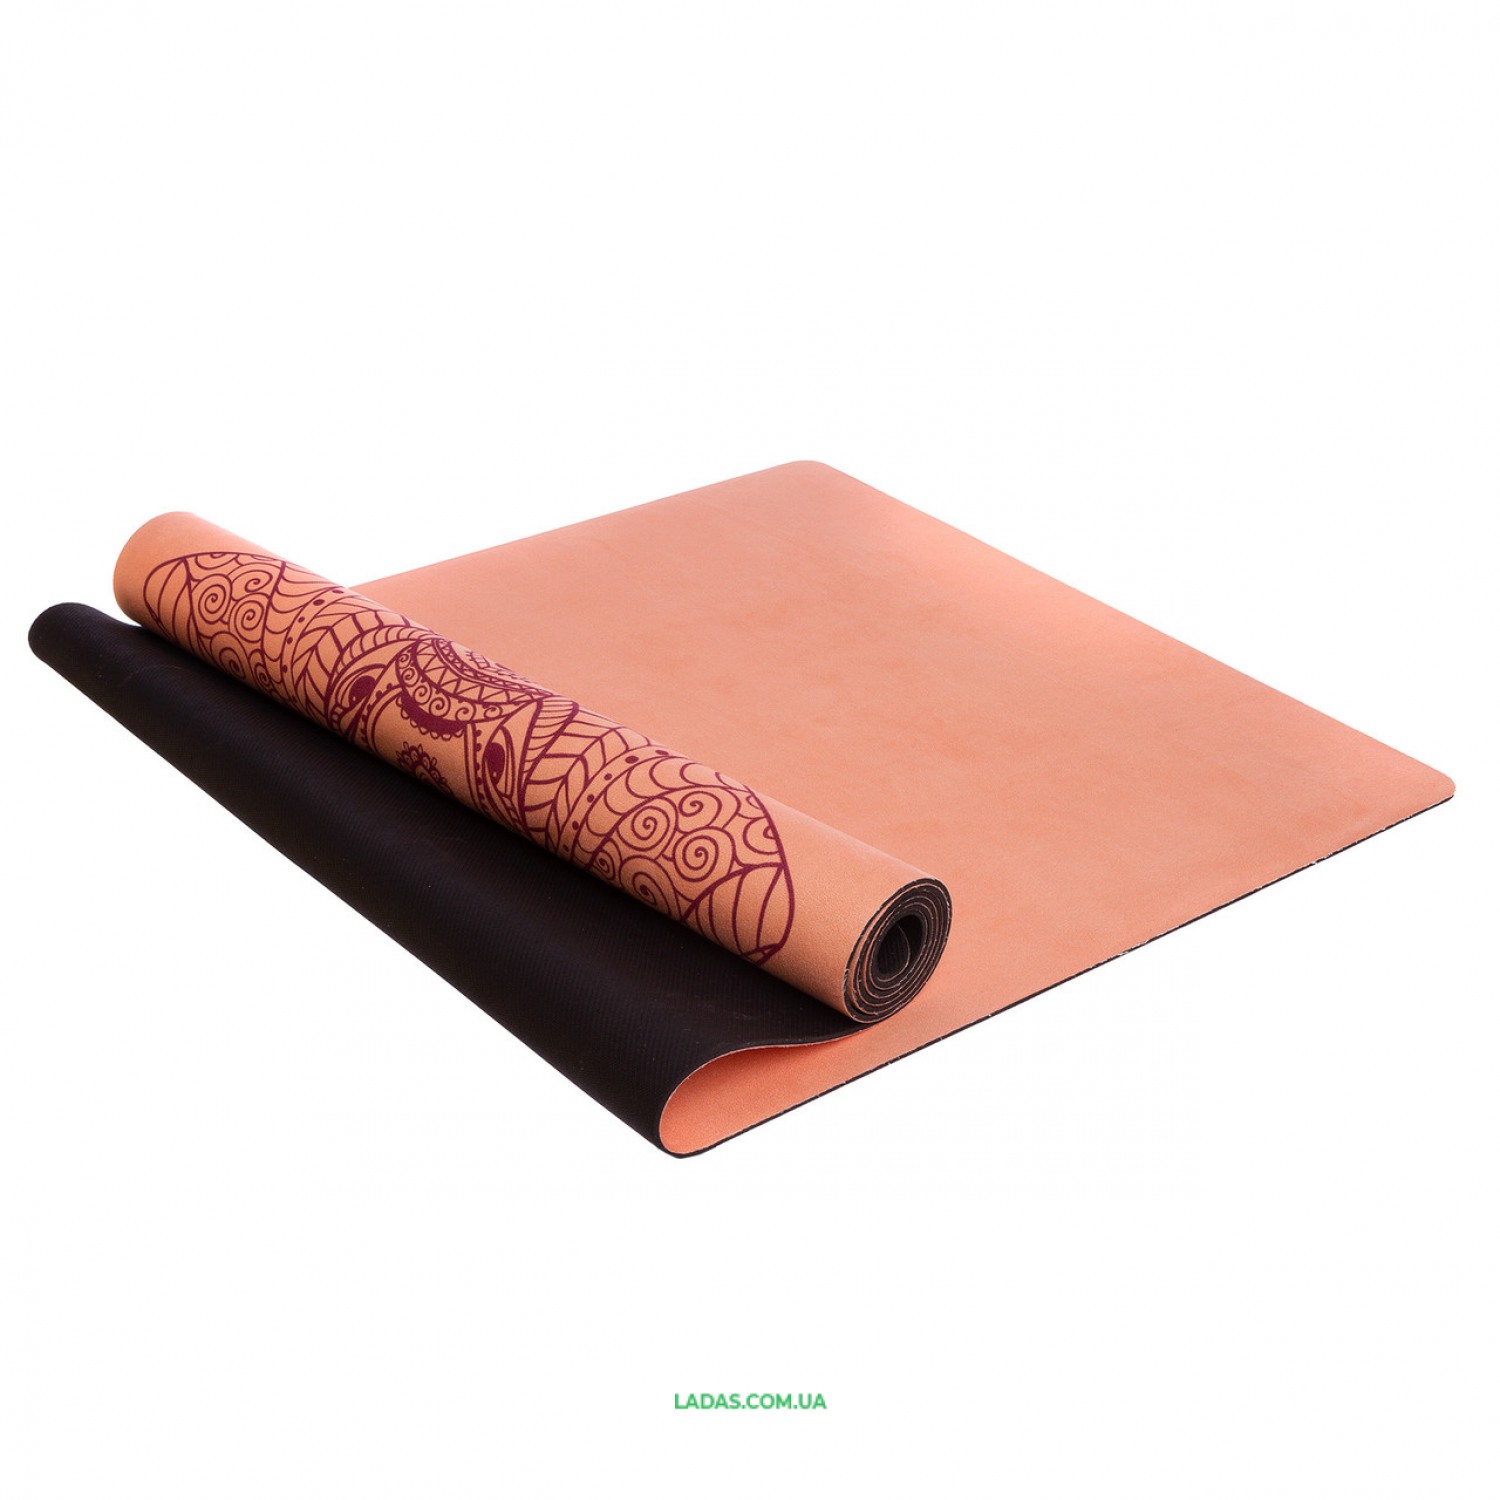 Коврик для йоги Замшевый каучуковый двухслойный Record (размер 1,83мx0,61мx3мм, персиковый)